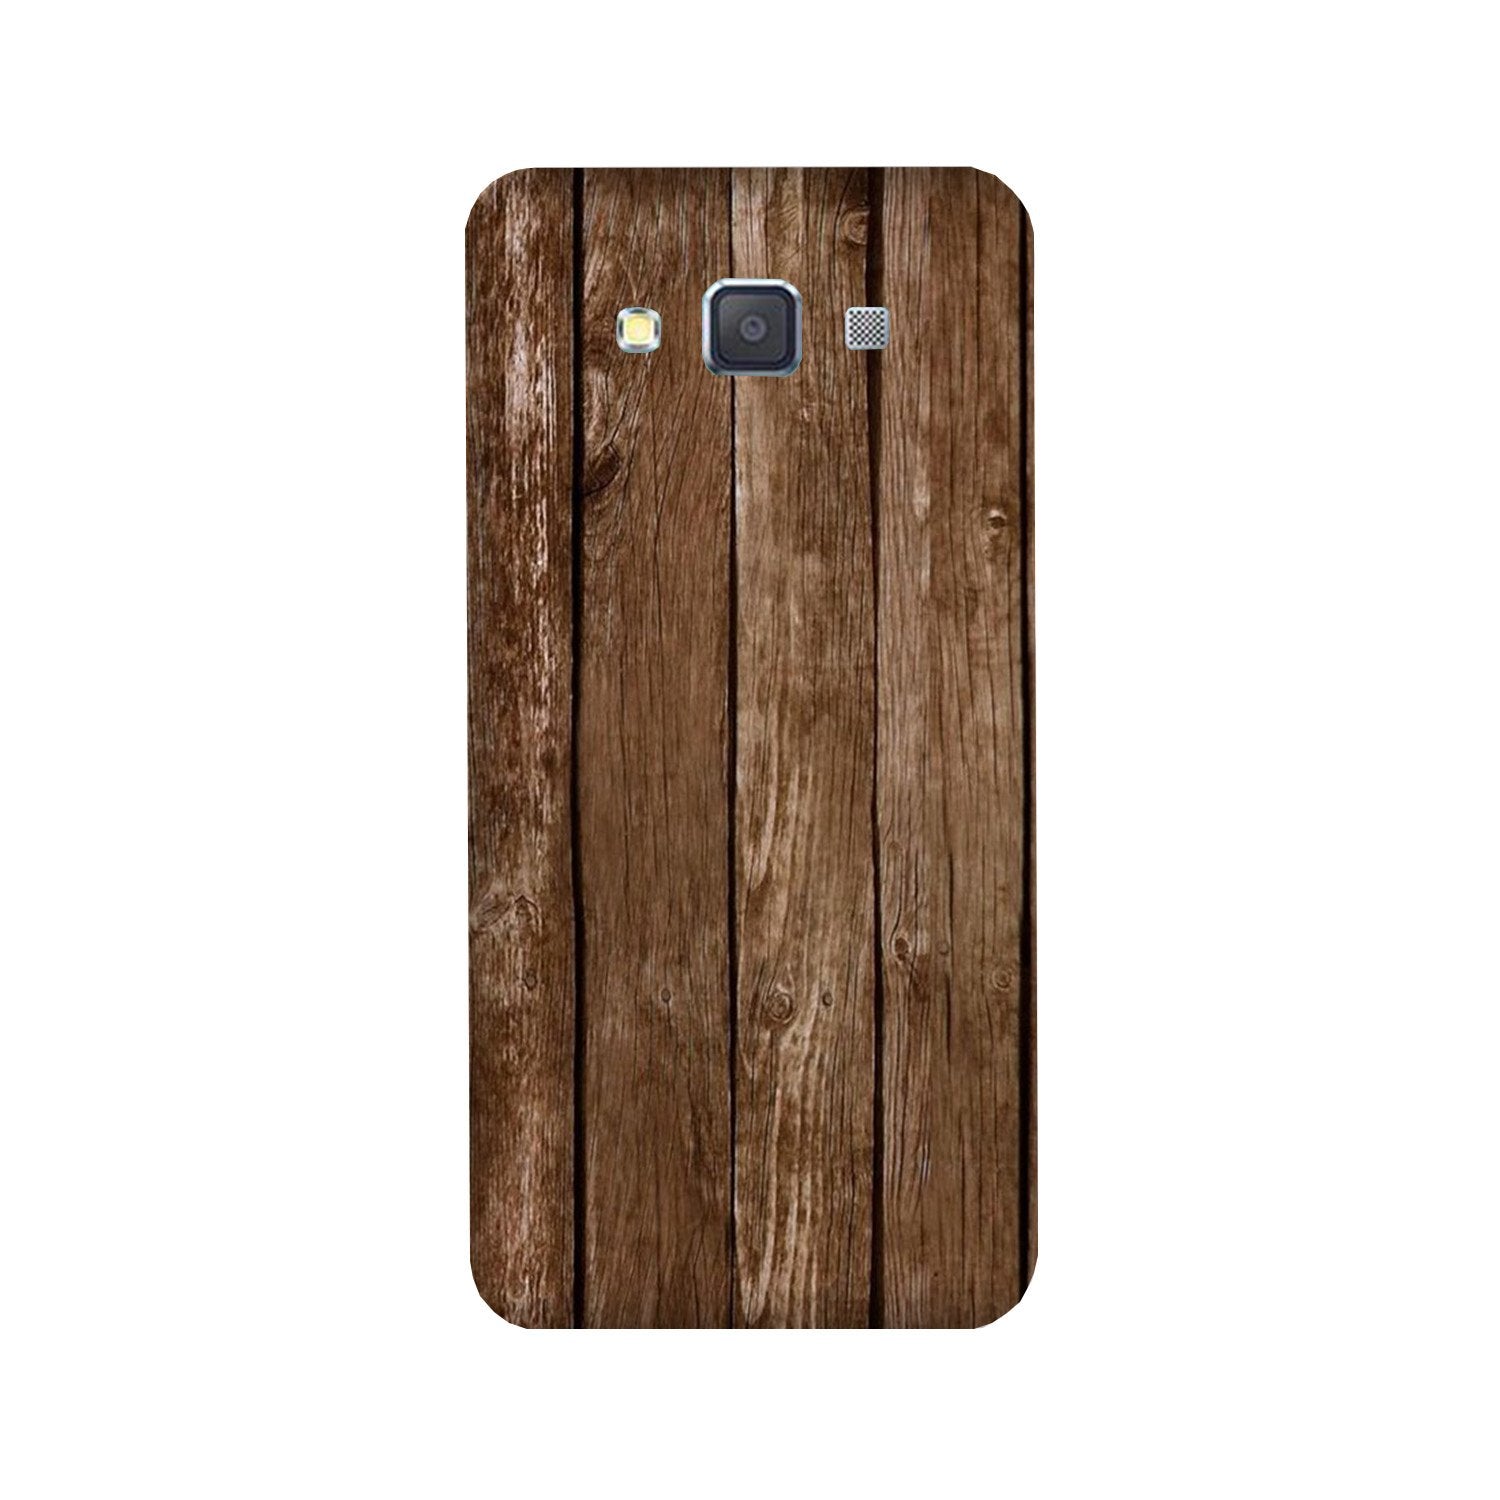 Wooden Look Case for Galaxy E5  (Design - 112)